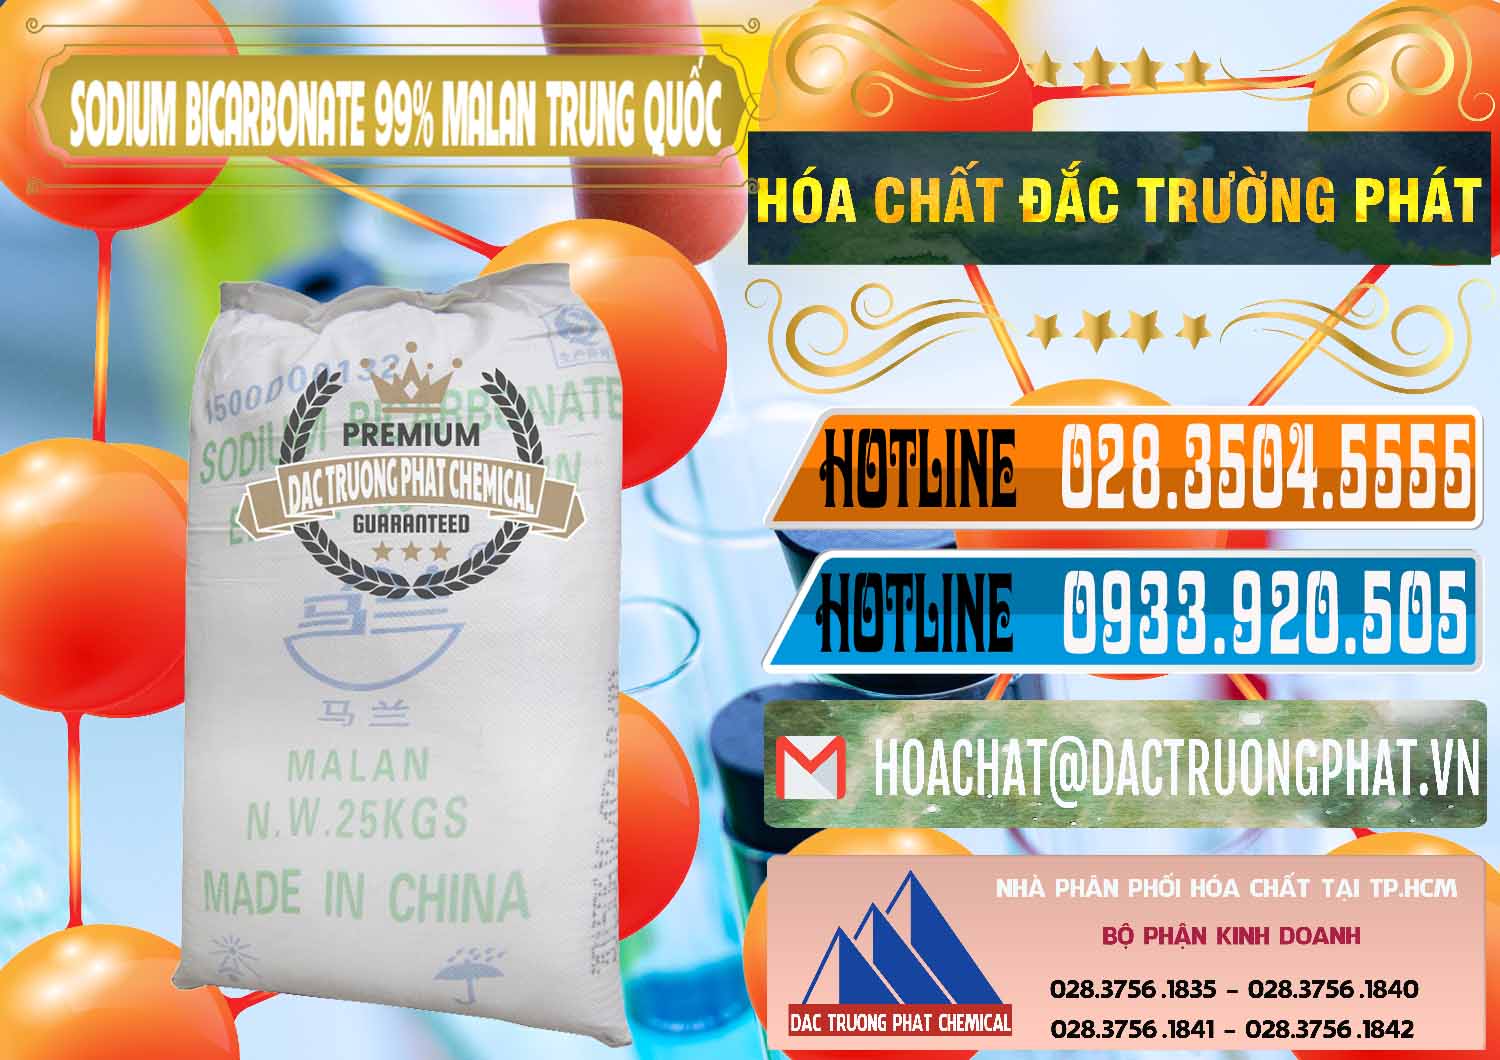 Chuyên bán & phân phối Sodium Bicarbonate – Bicar NaHCO3 Malan Trung Quốc China - 0218 - Nhà phân phối _ bán hóa chất tại TP.HCM - stmp.net